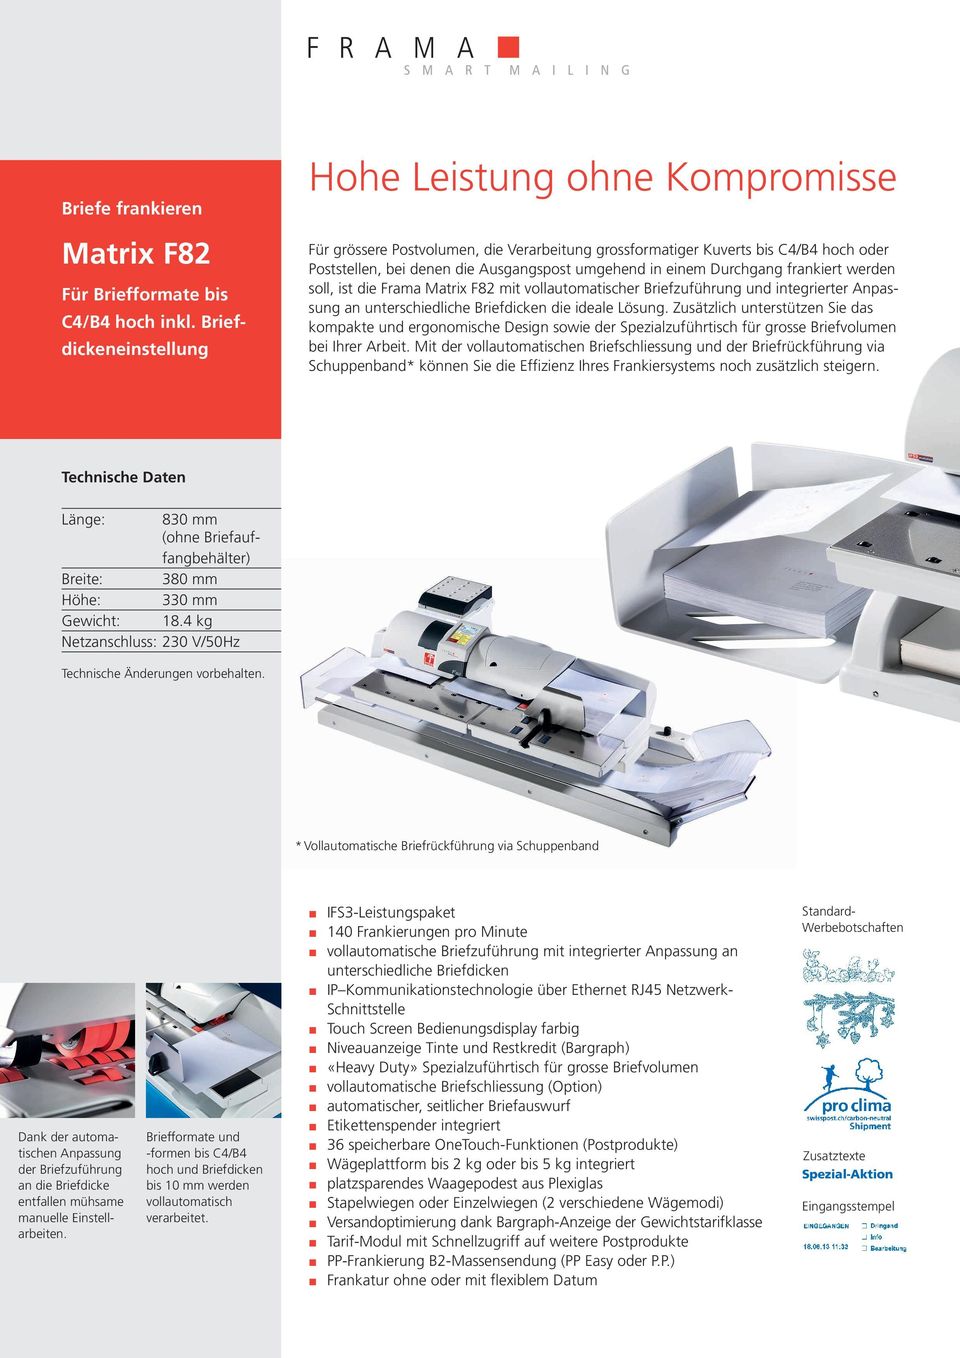 Durchgang frankiert werden soll, ist die Frama Matrix F82 mit vollautomatischer Briefzuführung und integrierter Anpassung an unterschiedliche Briefdicken die ideale Lösung.